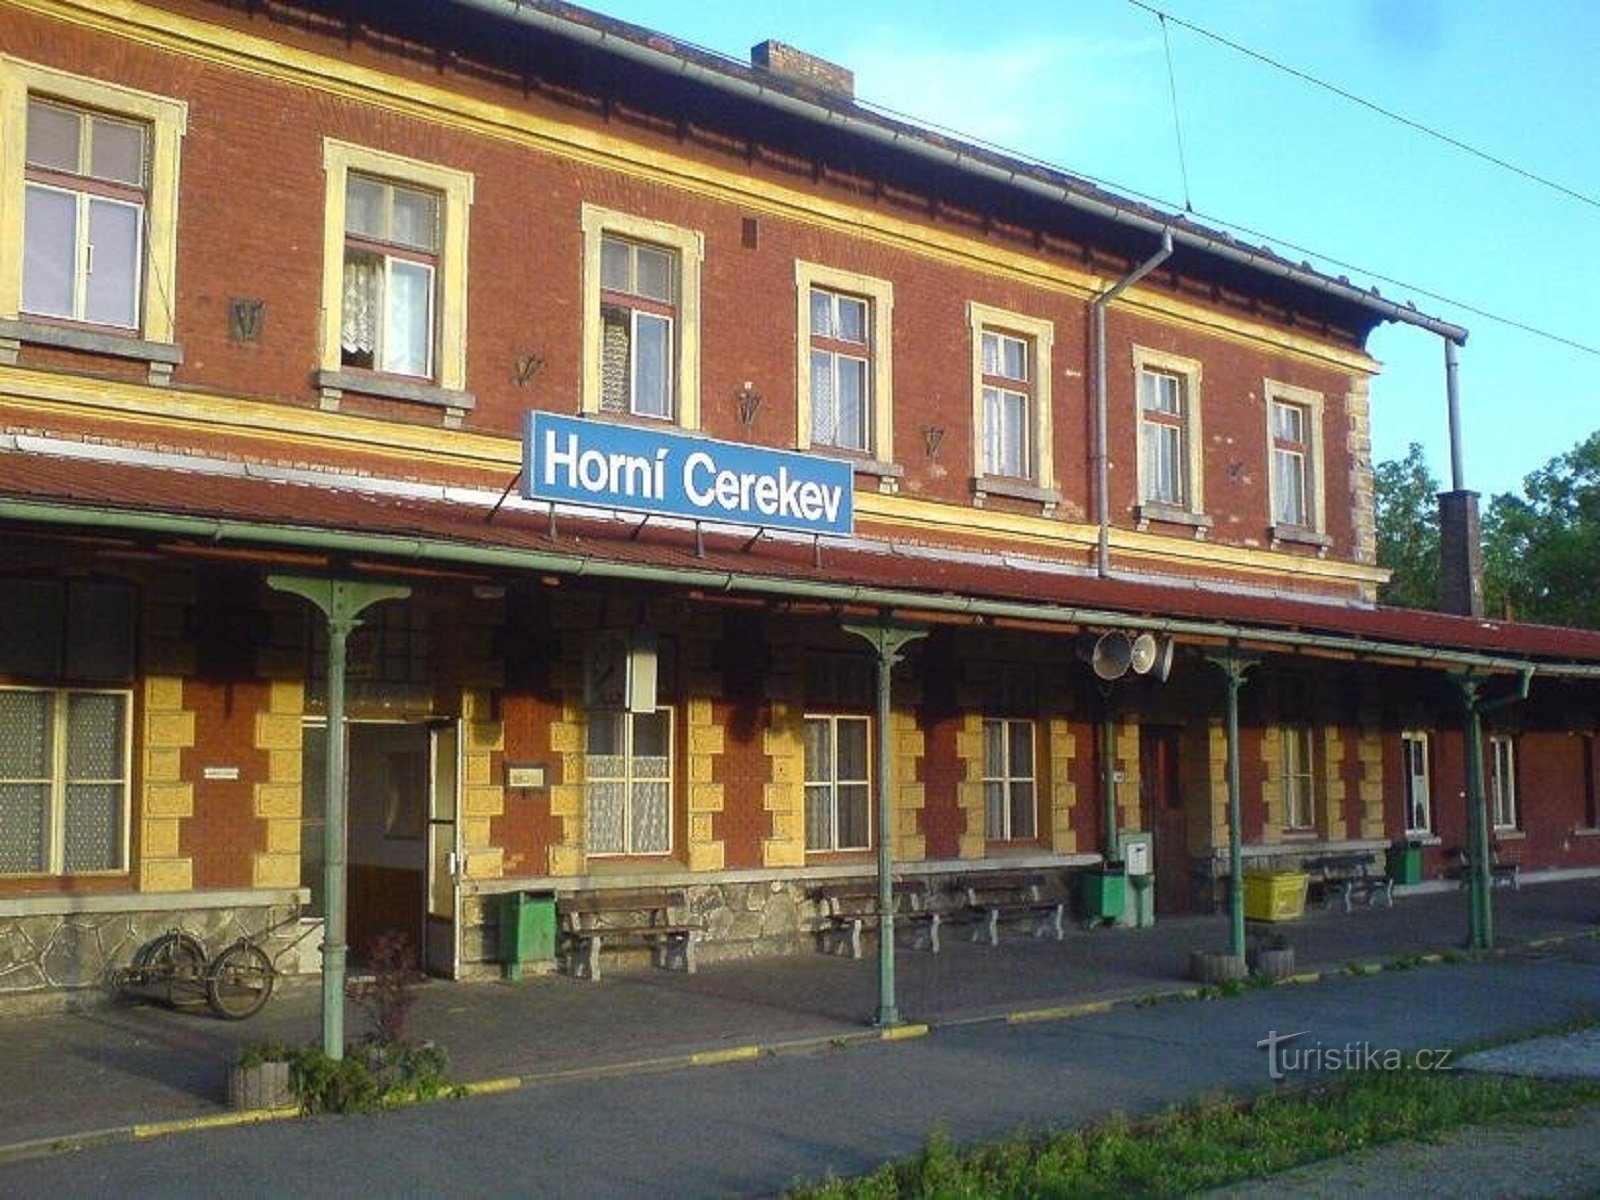 1. Железнодорожный вокзал в Горни-Церекве.